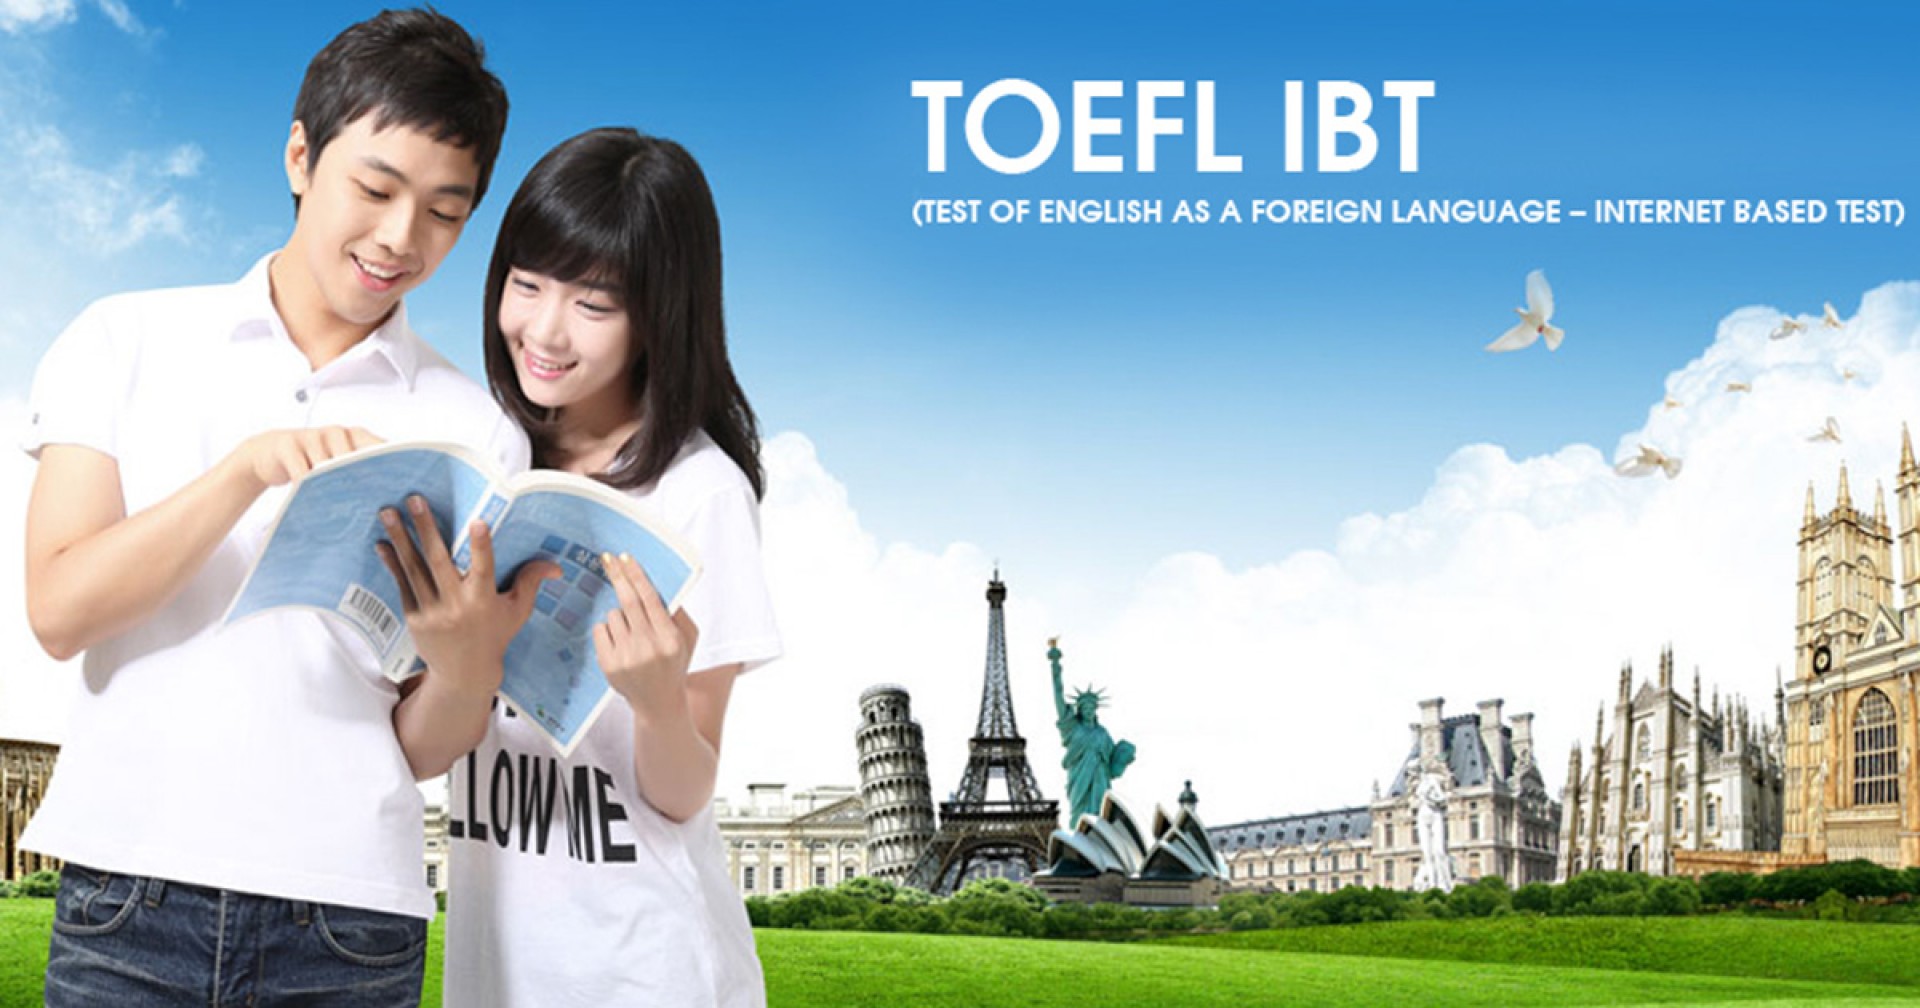 Du học Philippines để luyện thi TOEFL, chọn trường nào tốt?